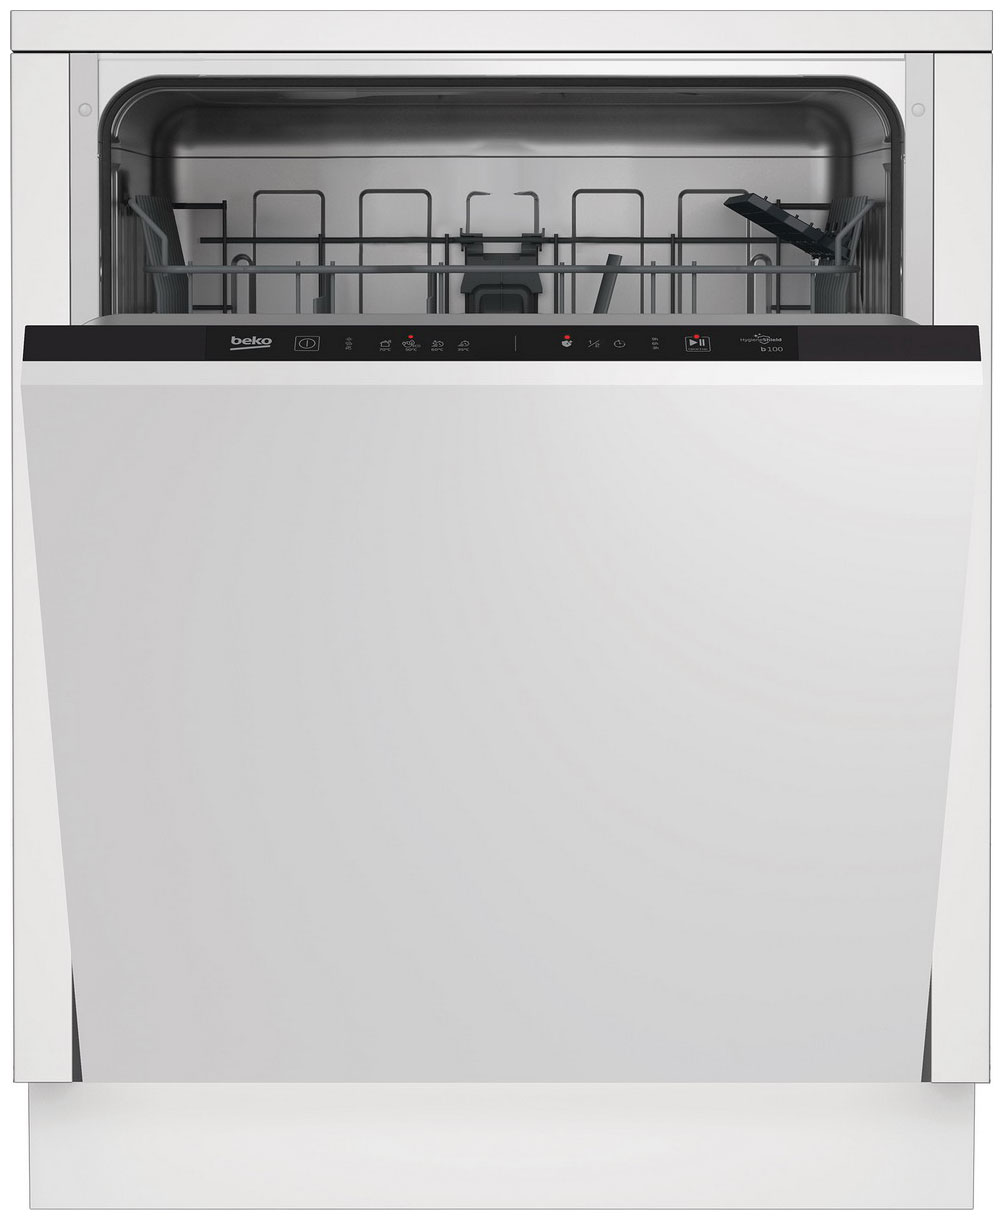 Встраиваемая посудомоечная машина Beko BDIN14320 встраиваемая посудомоечная машина beko bdin15560